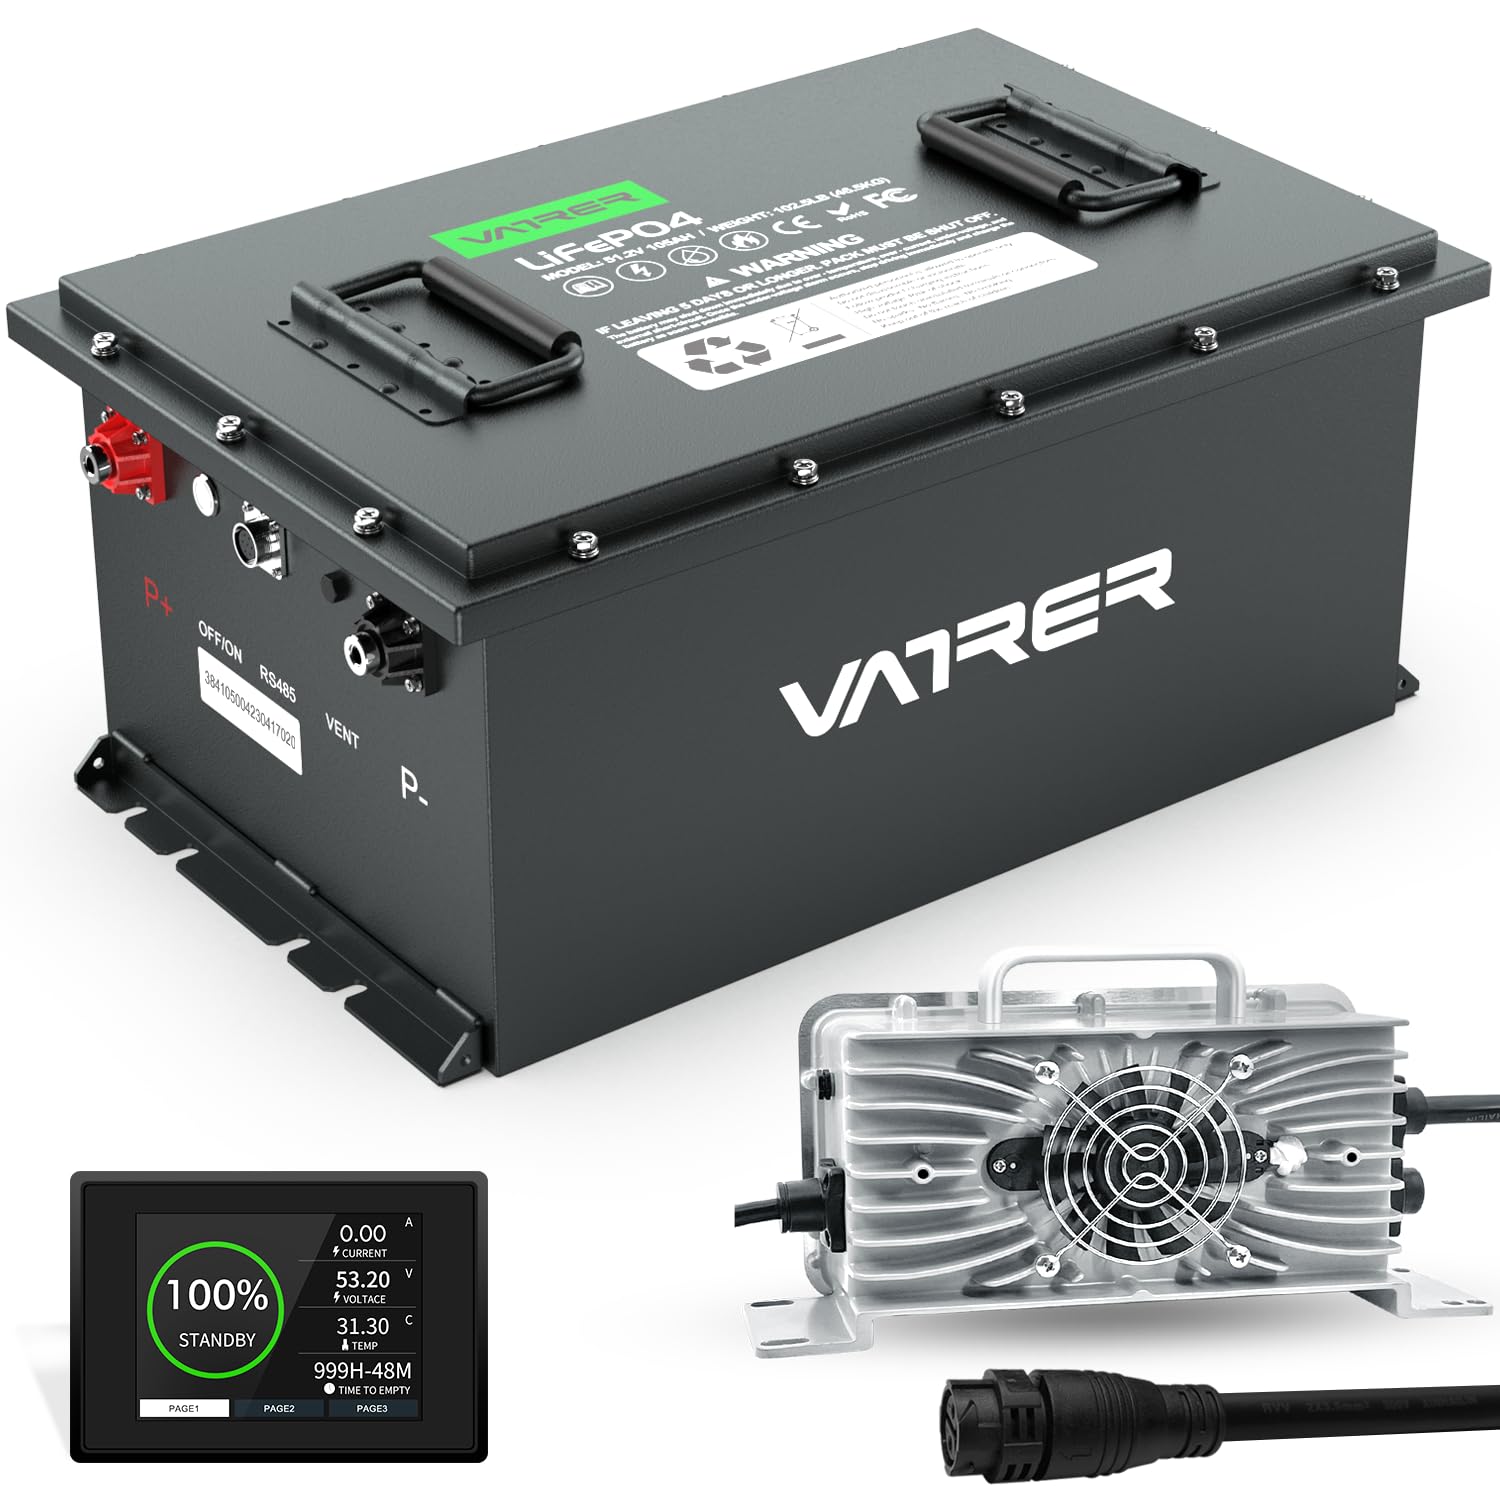 VATRER POWER 48V 105Ah Lithium Golf Cart Battery, Best Golf Cart Batteries